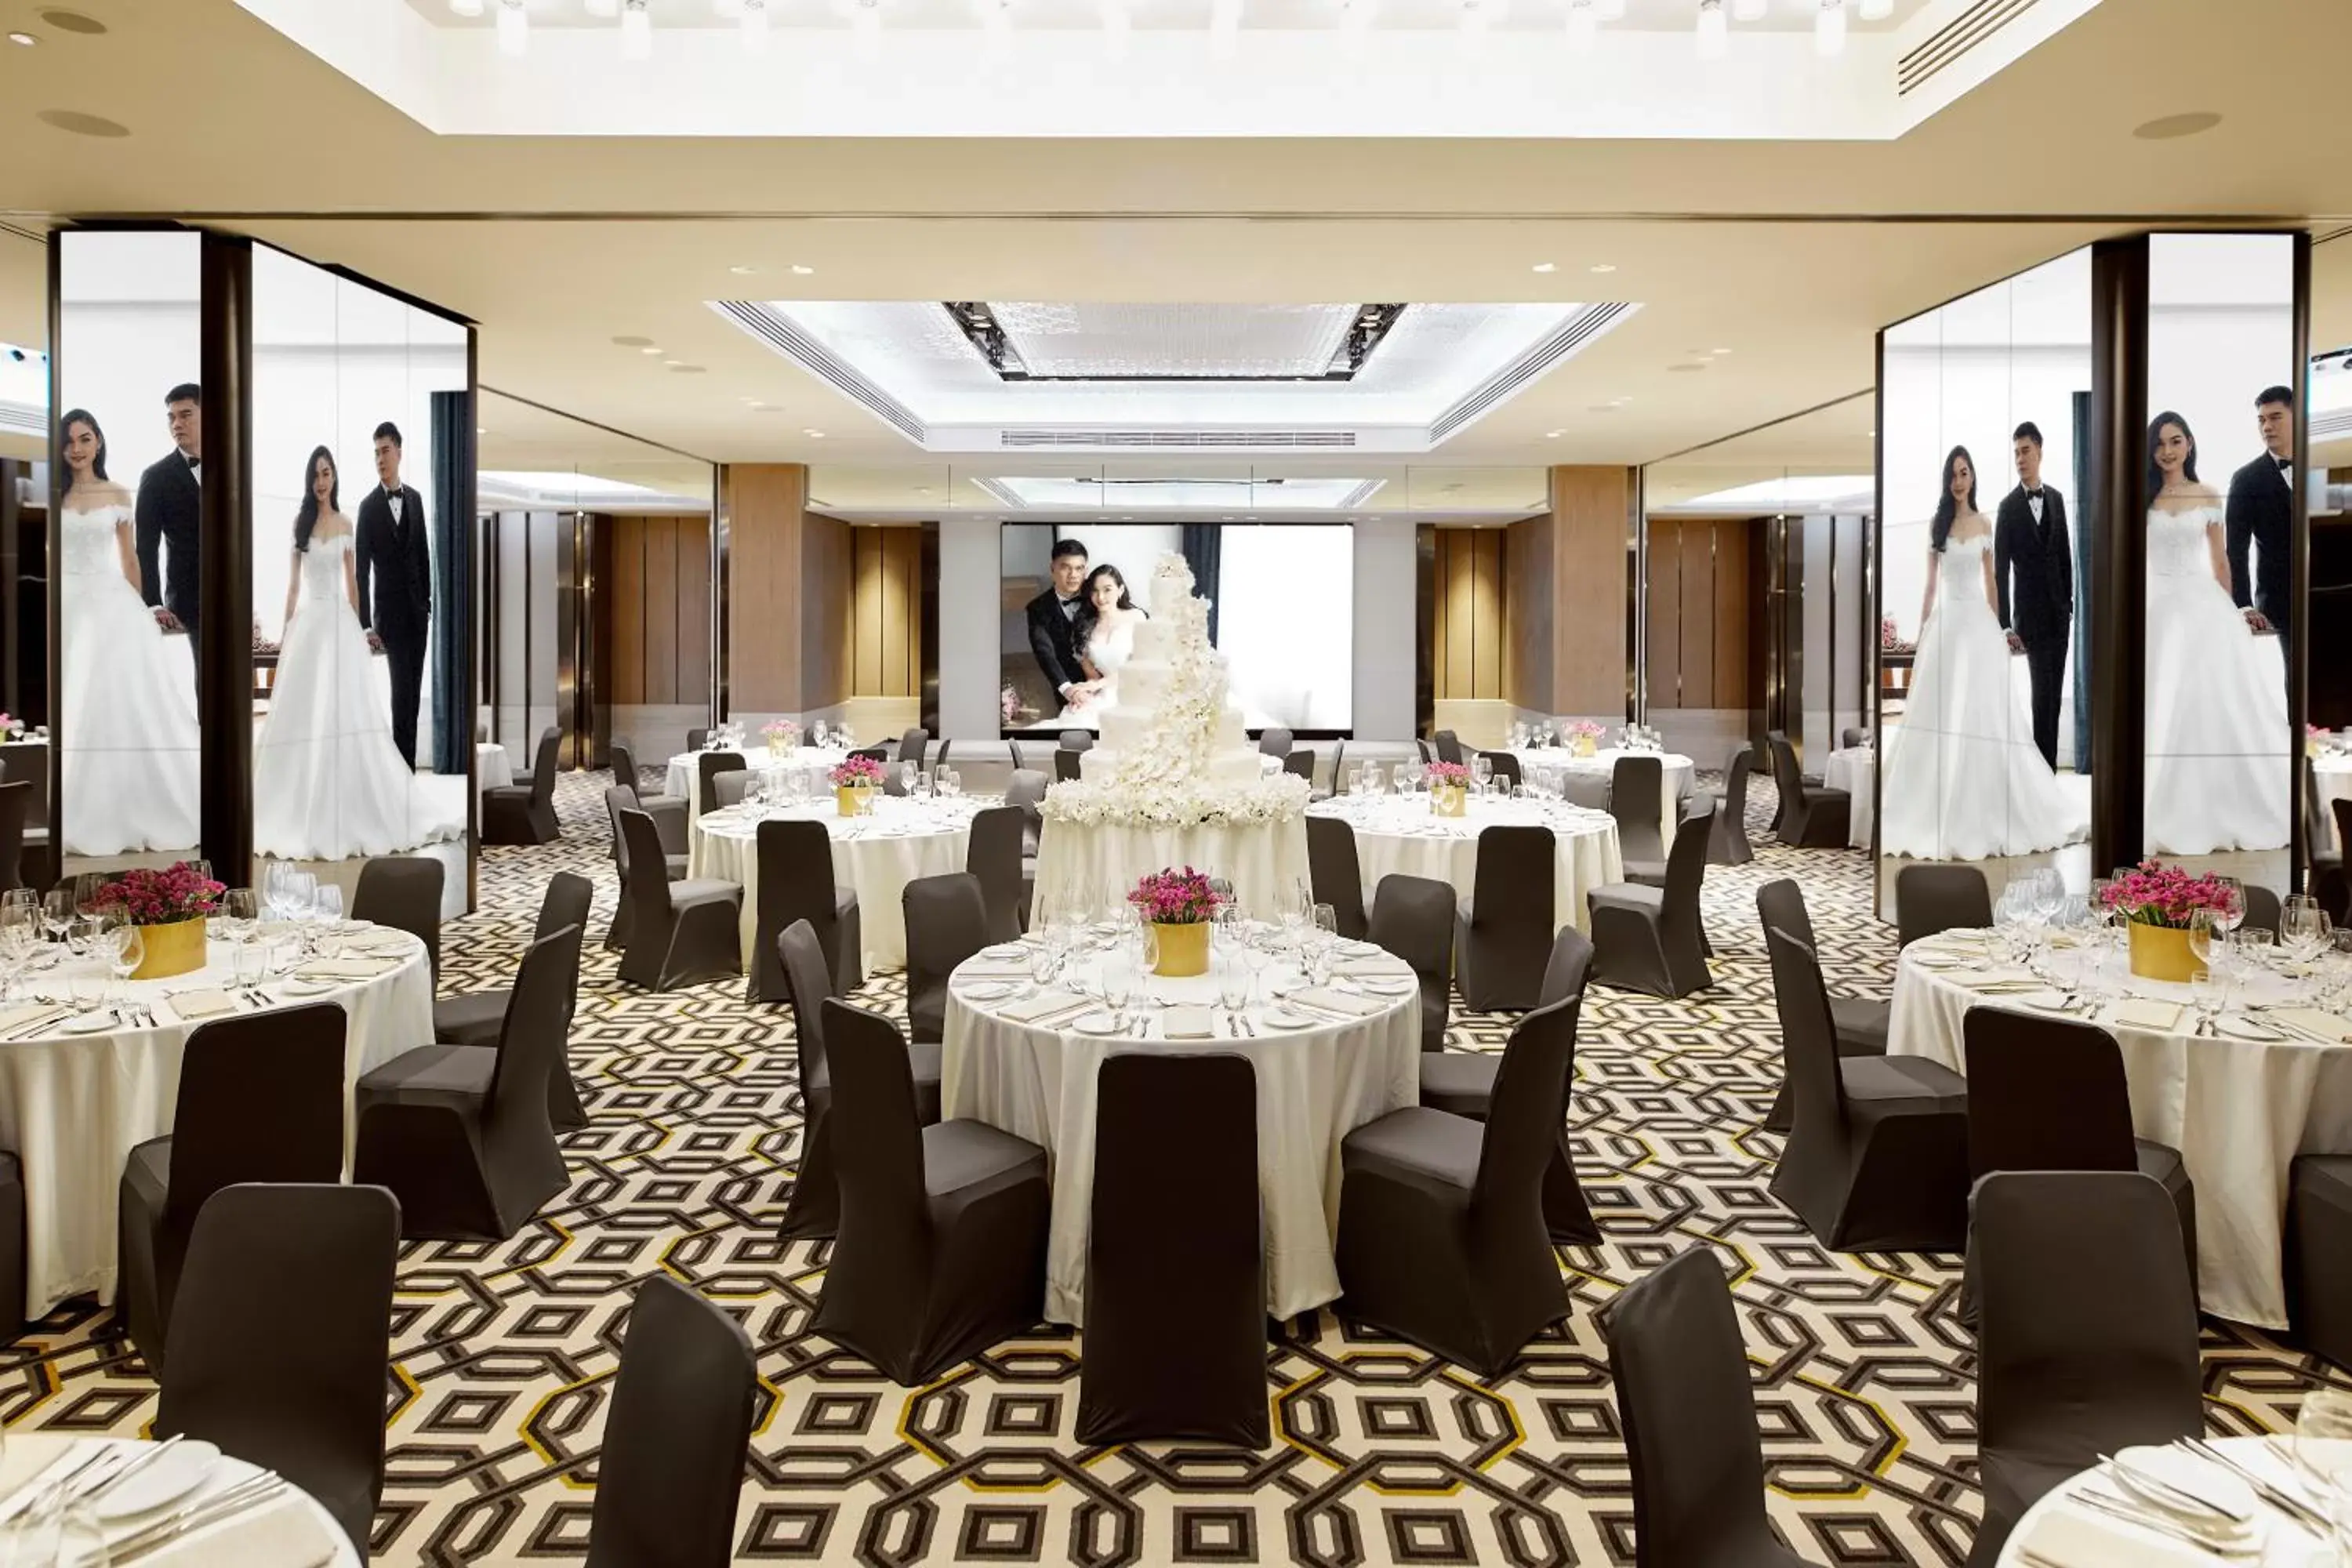 Banquet/Function facilities, Banquet Facilities in Montien Hotel Surawong Bangkok